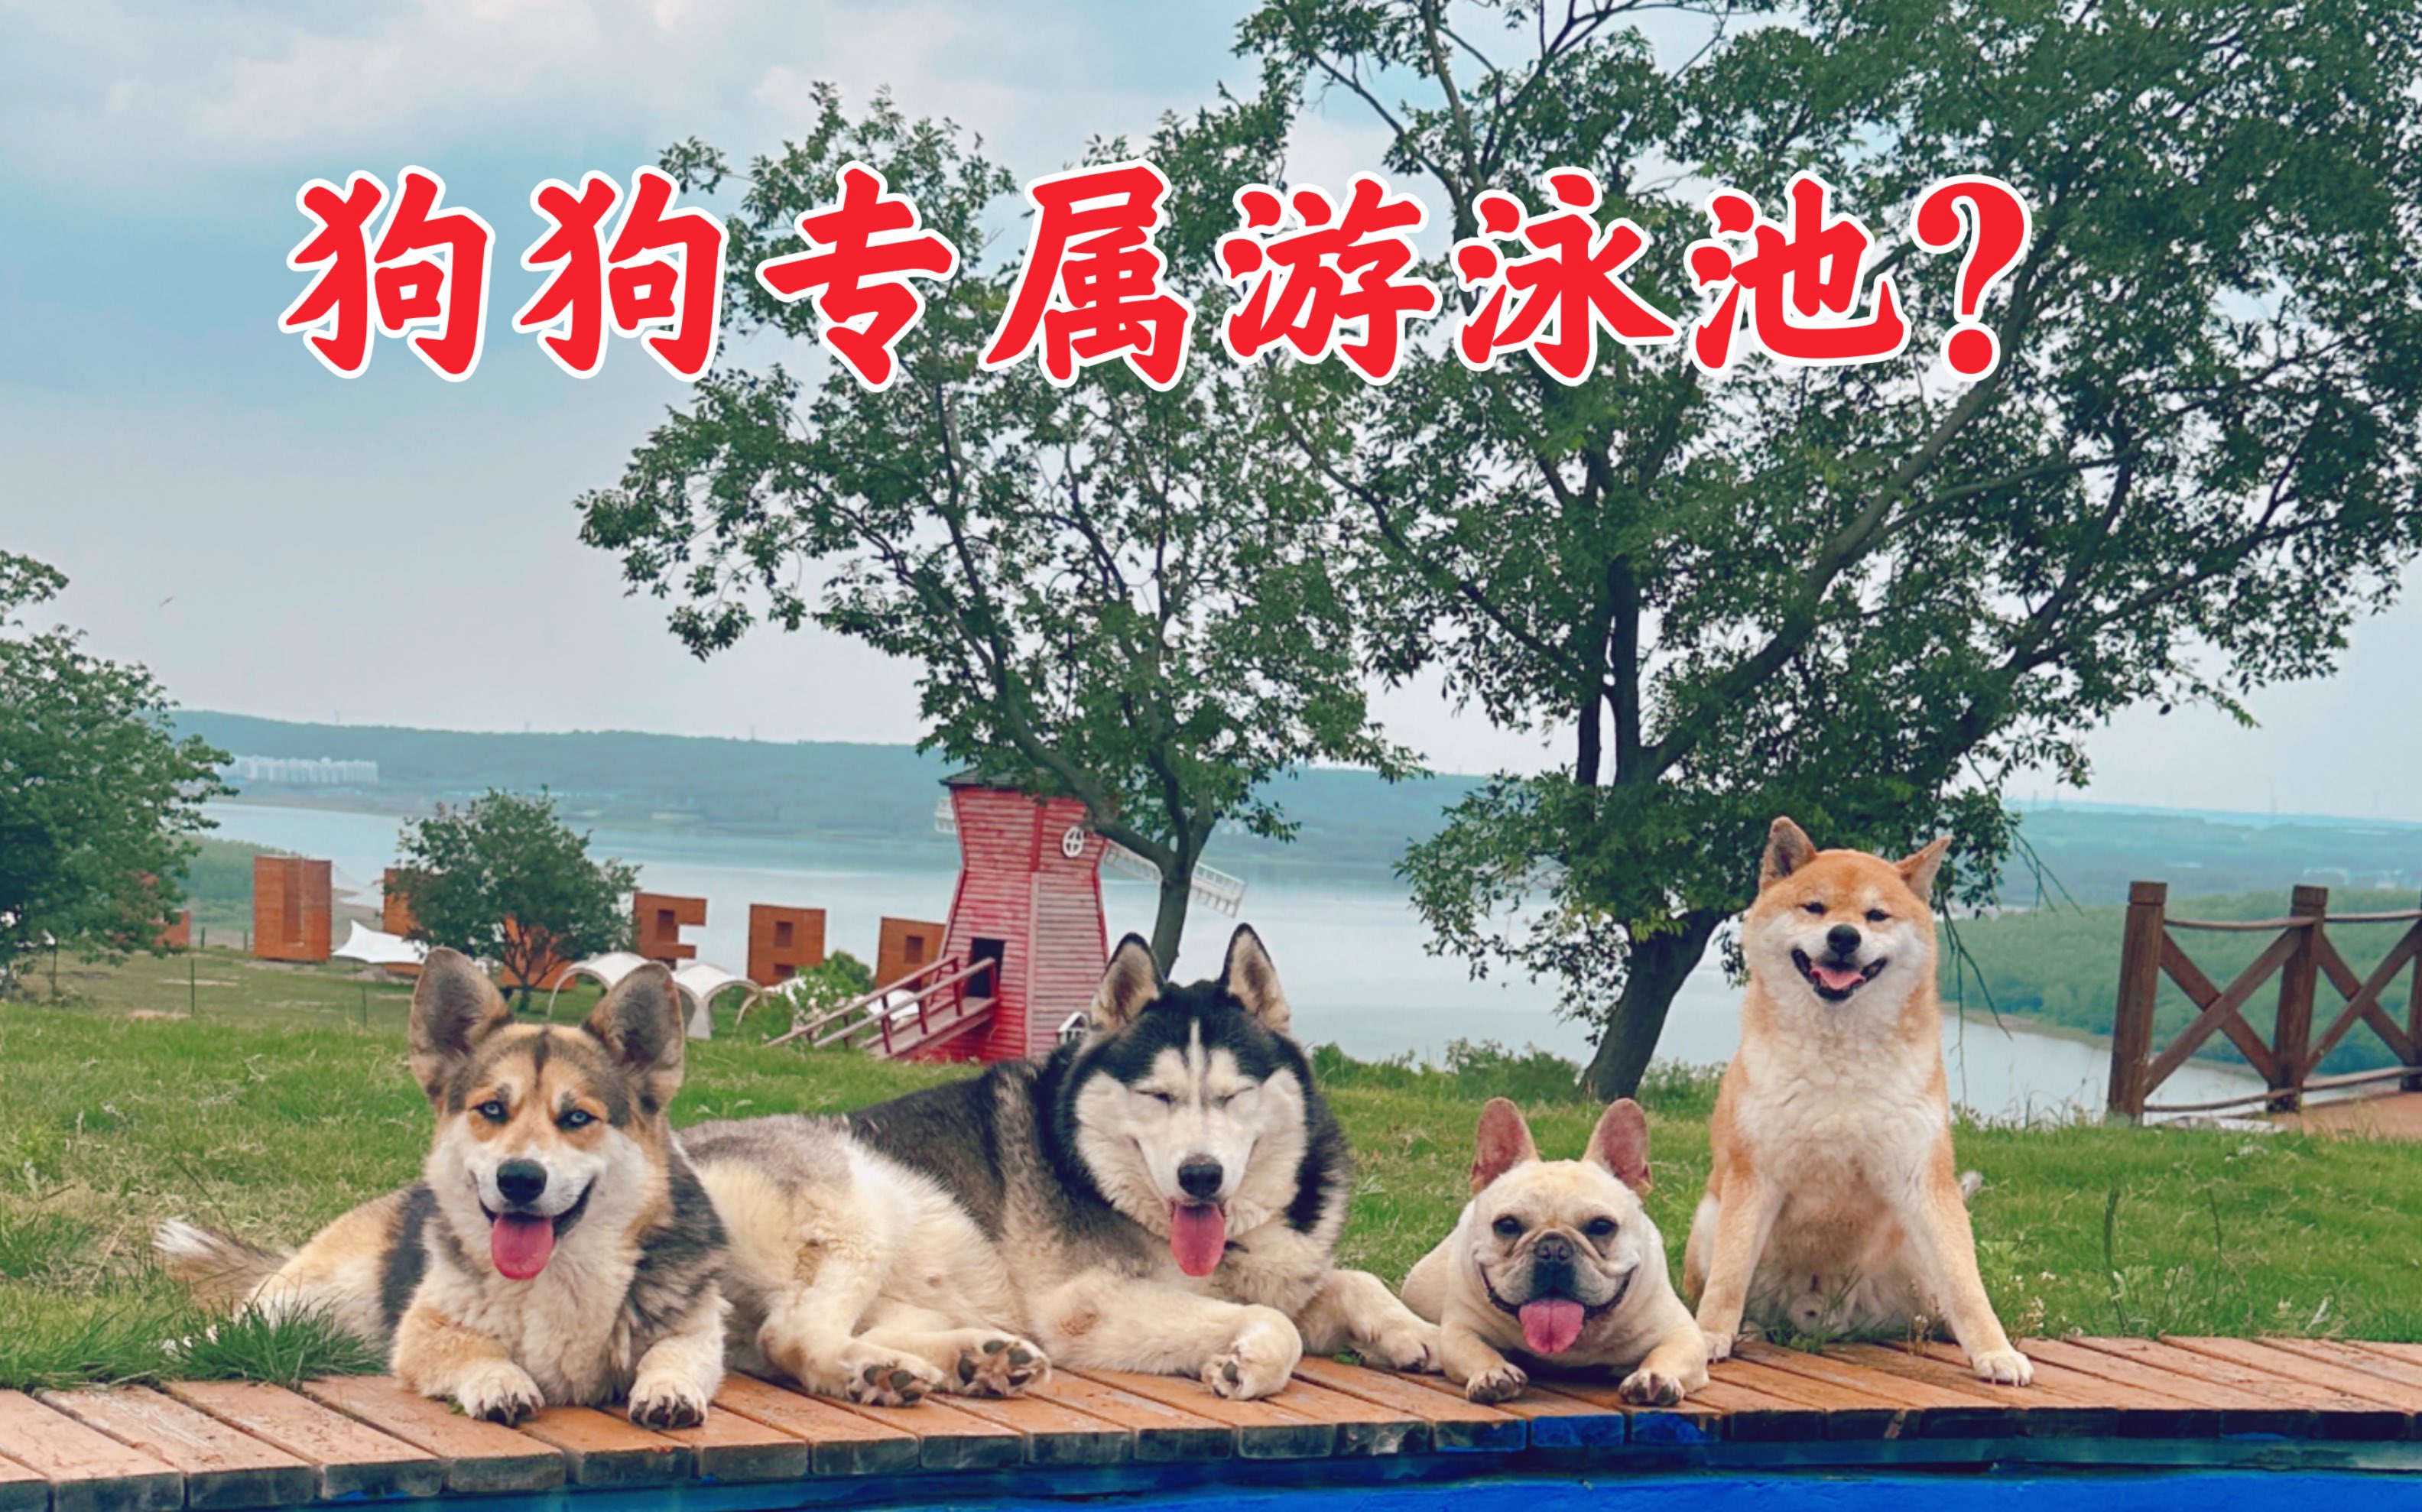 小捷克狼犬 - 捷克狼犬 - 猛犬俱乐部-中国具有影响力的猛犬网站 - Powered by Discuz!